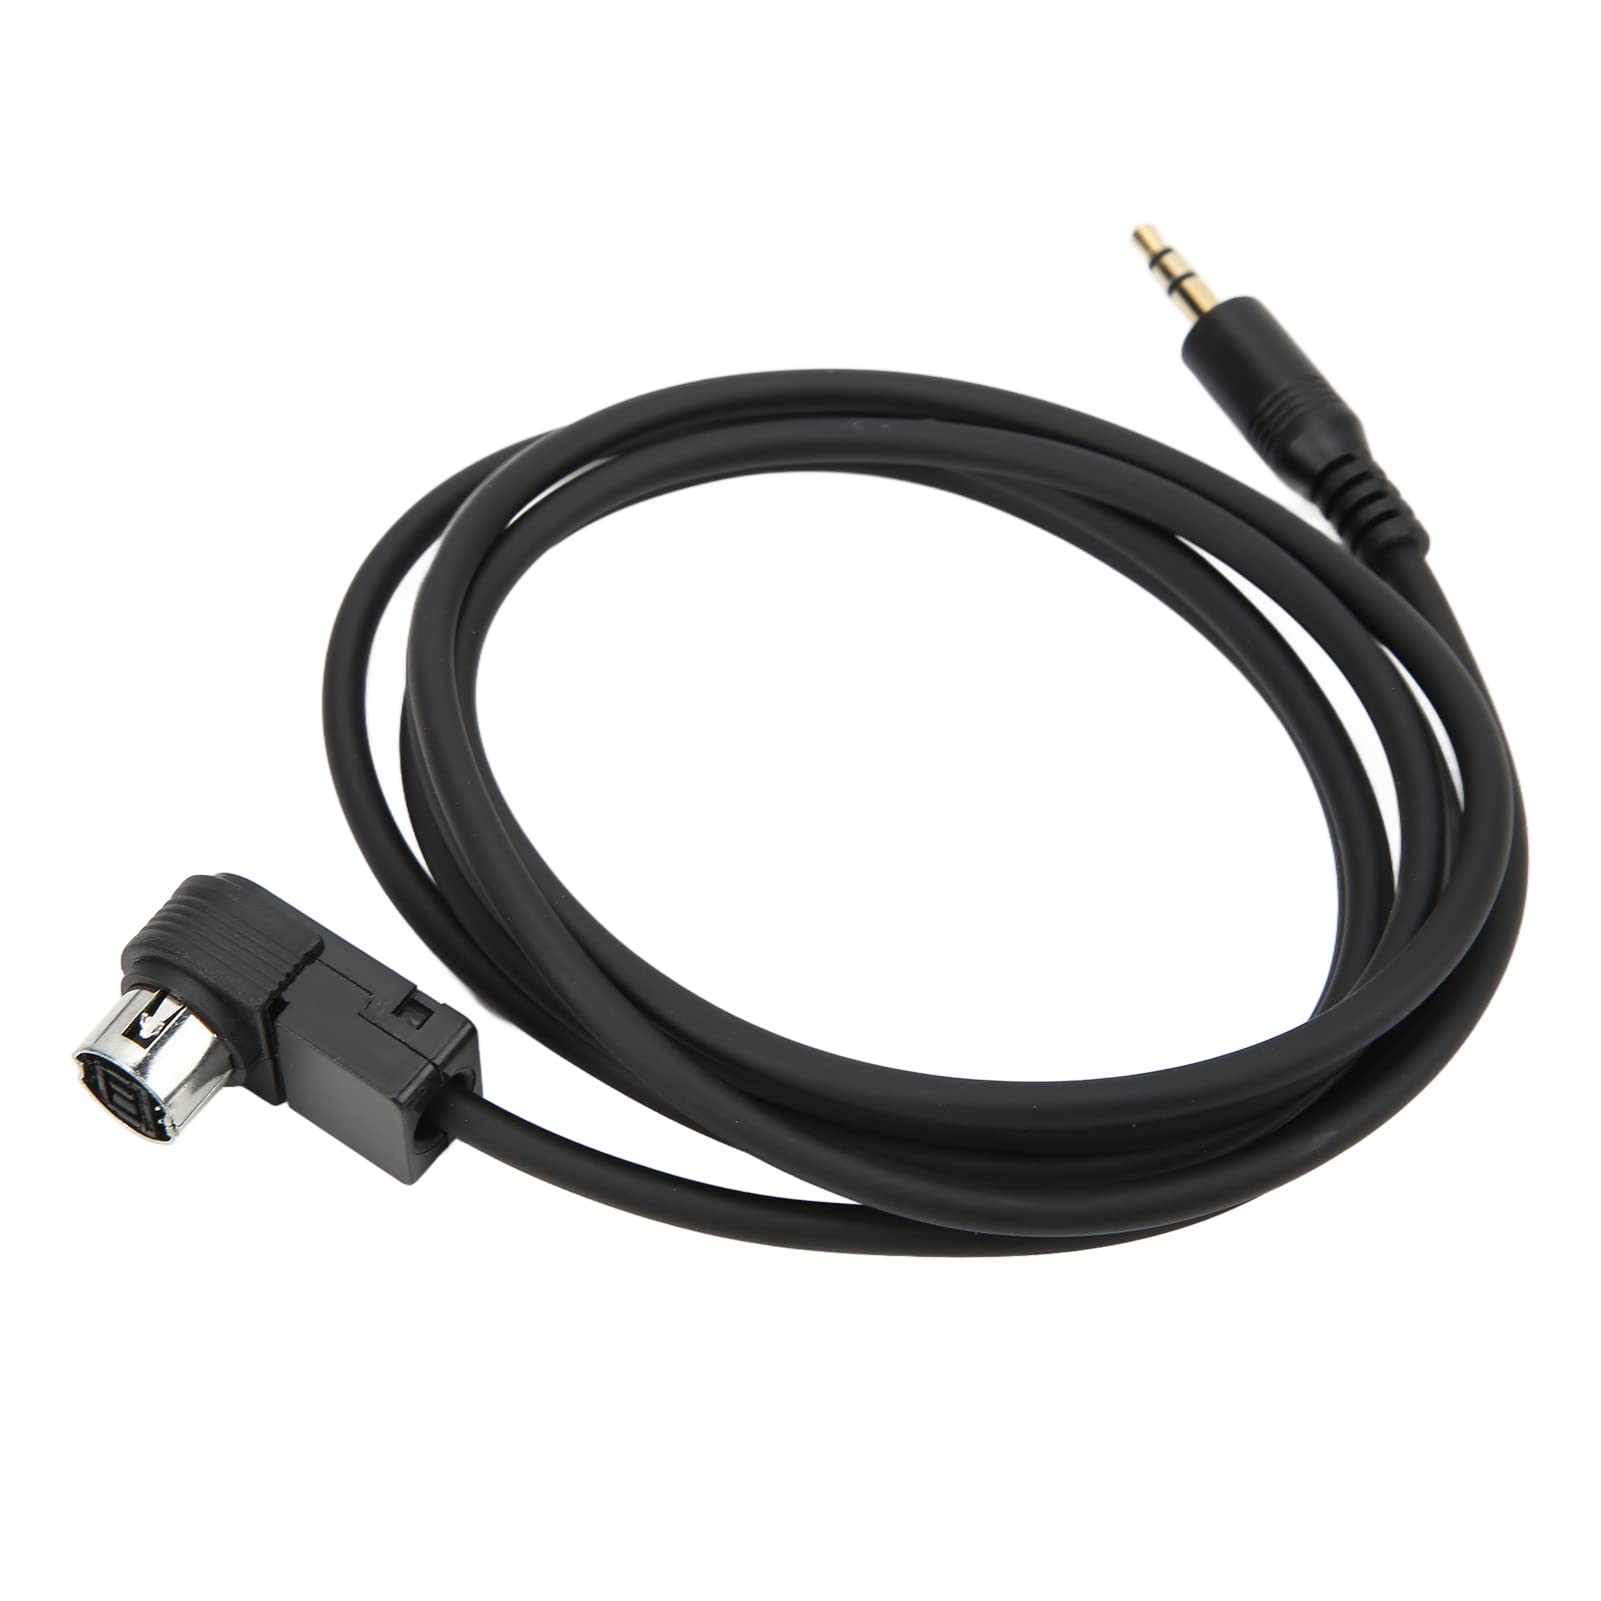 AutoAux Kabel 3,5 Mm Klinke fürCD KS-U58 PD100 U57 U29 für IOS MP3 von Yctze